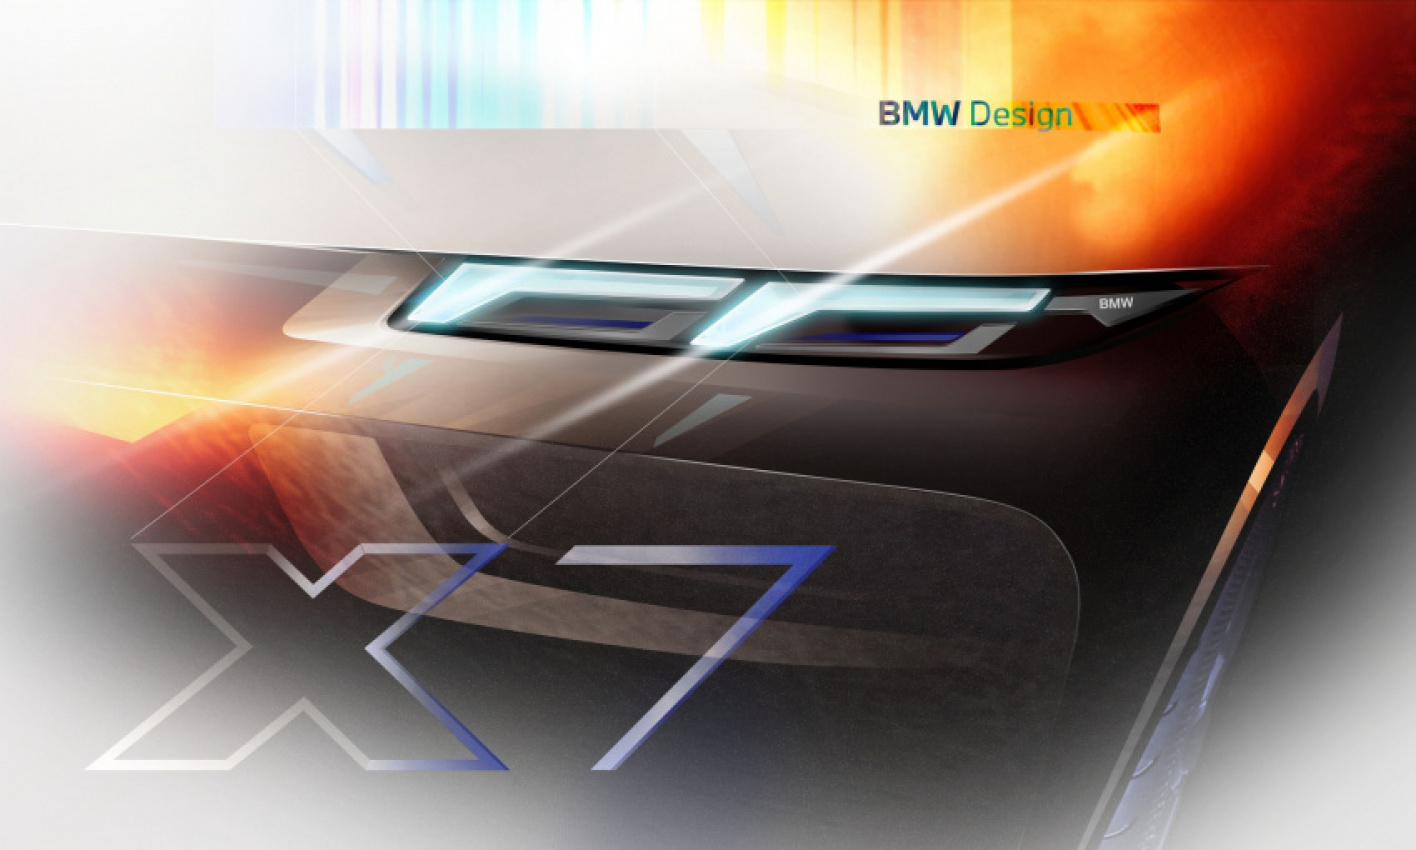 autos, bmw, cars, 2022 bmw x7, bmw x7, bmw x7 facelift, bmw x7 lci, world premiere: bmw x7 facelift — split headlights and new engine